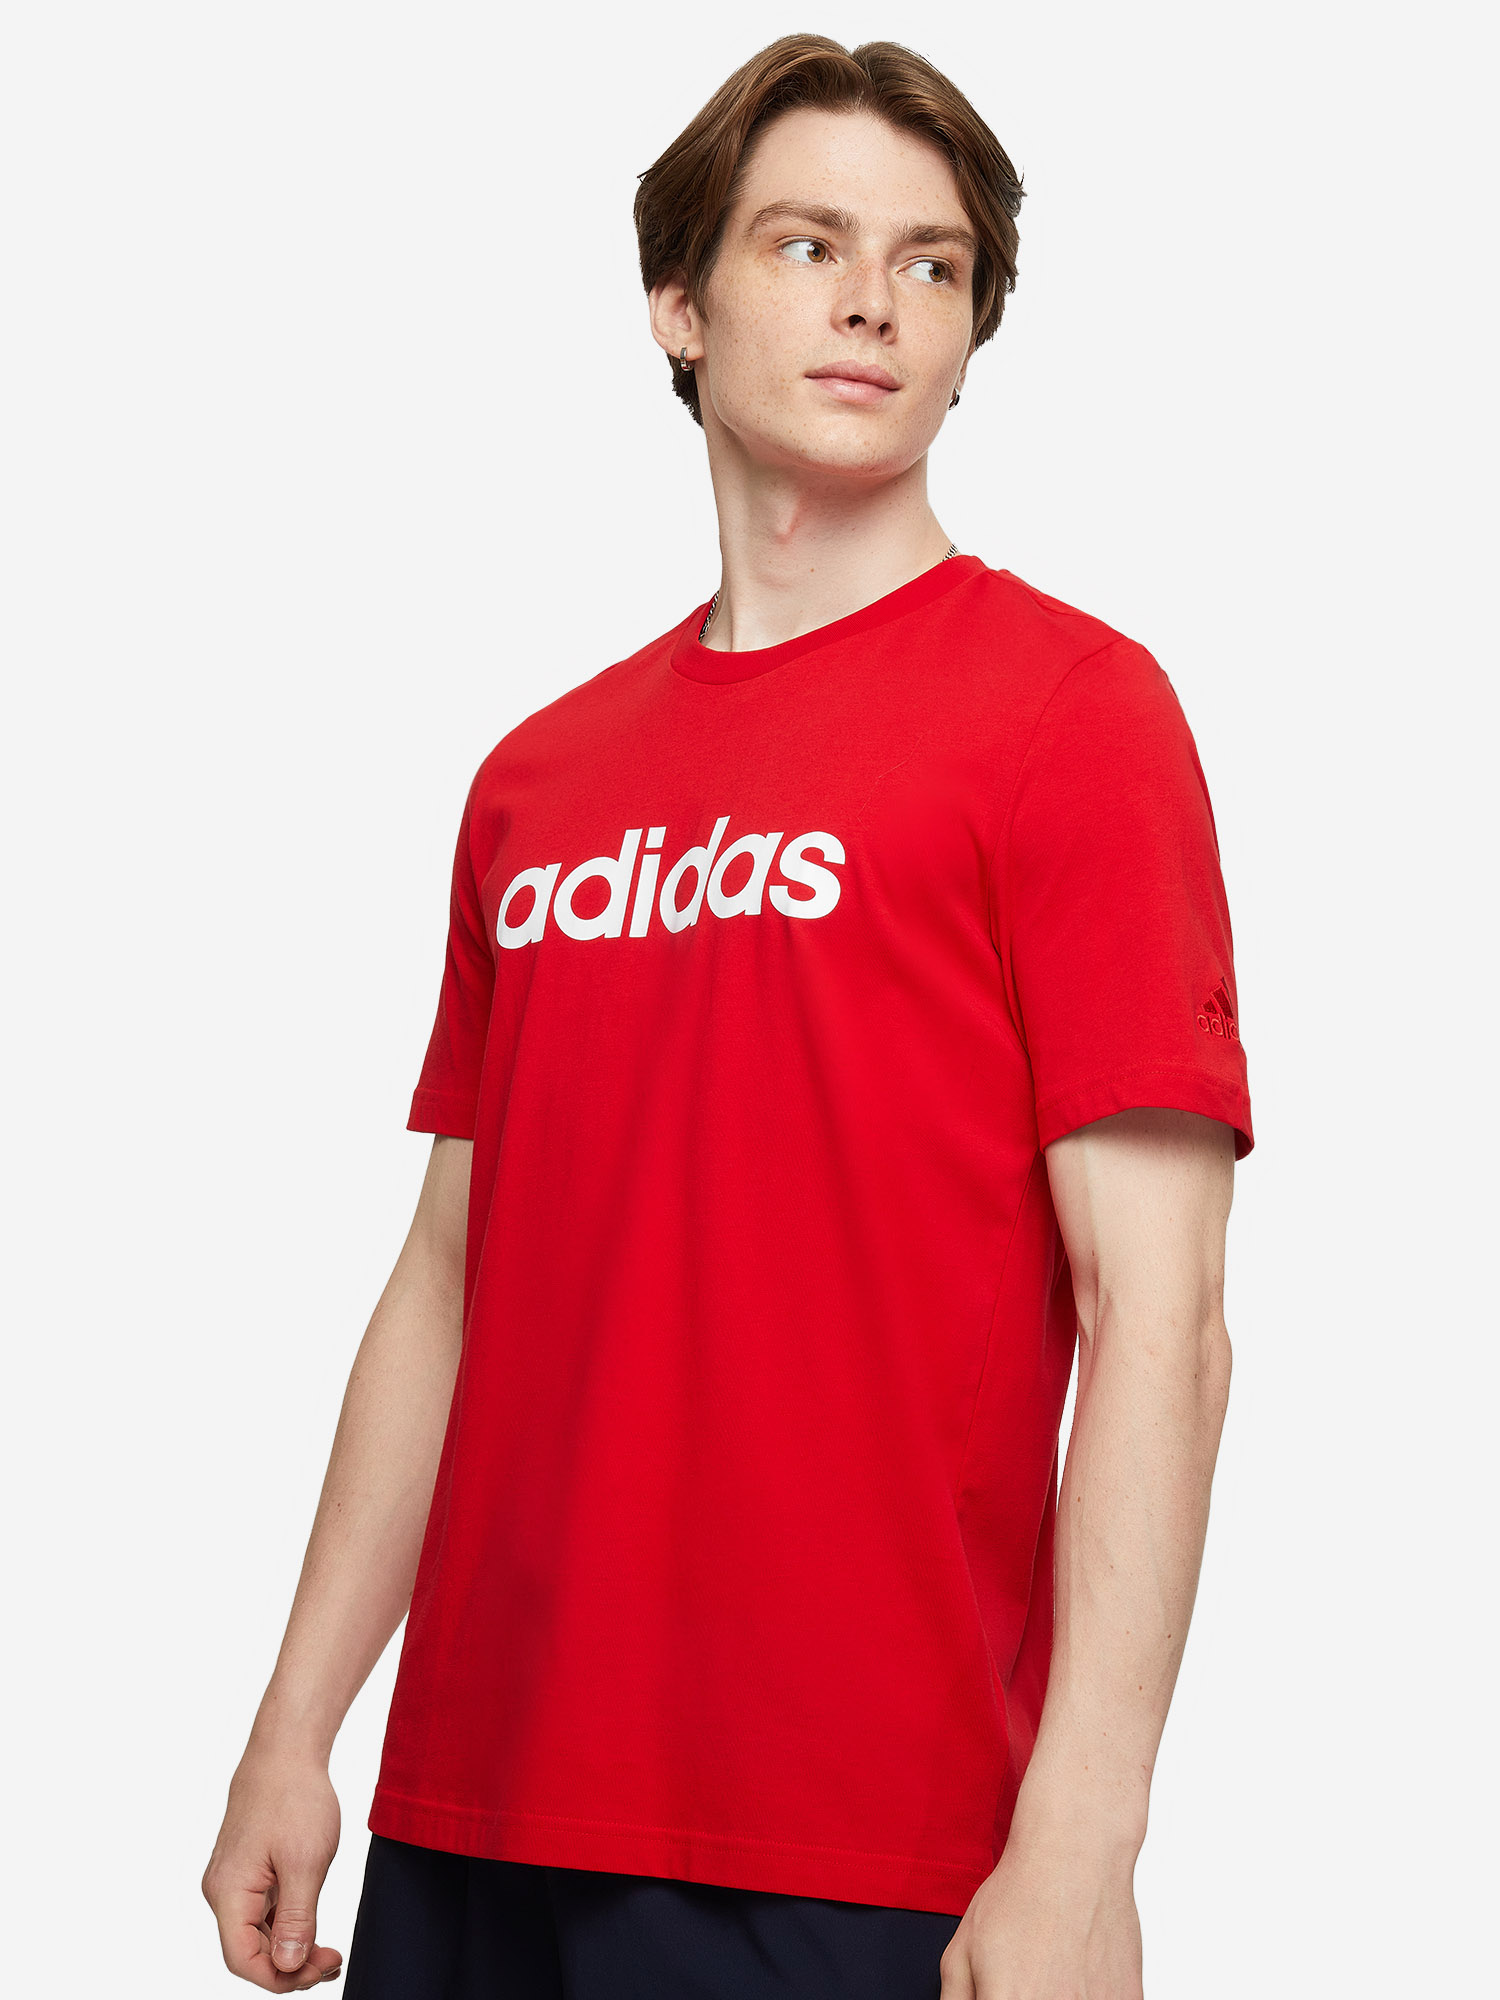 Футболка мужская adidas, Красный футболка мужская adidas estro 19 красный